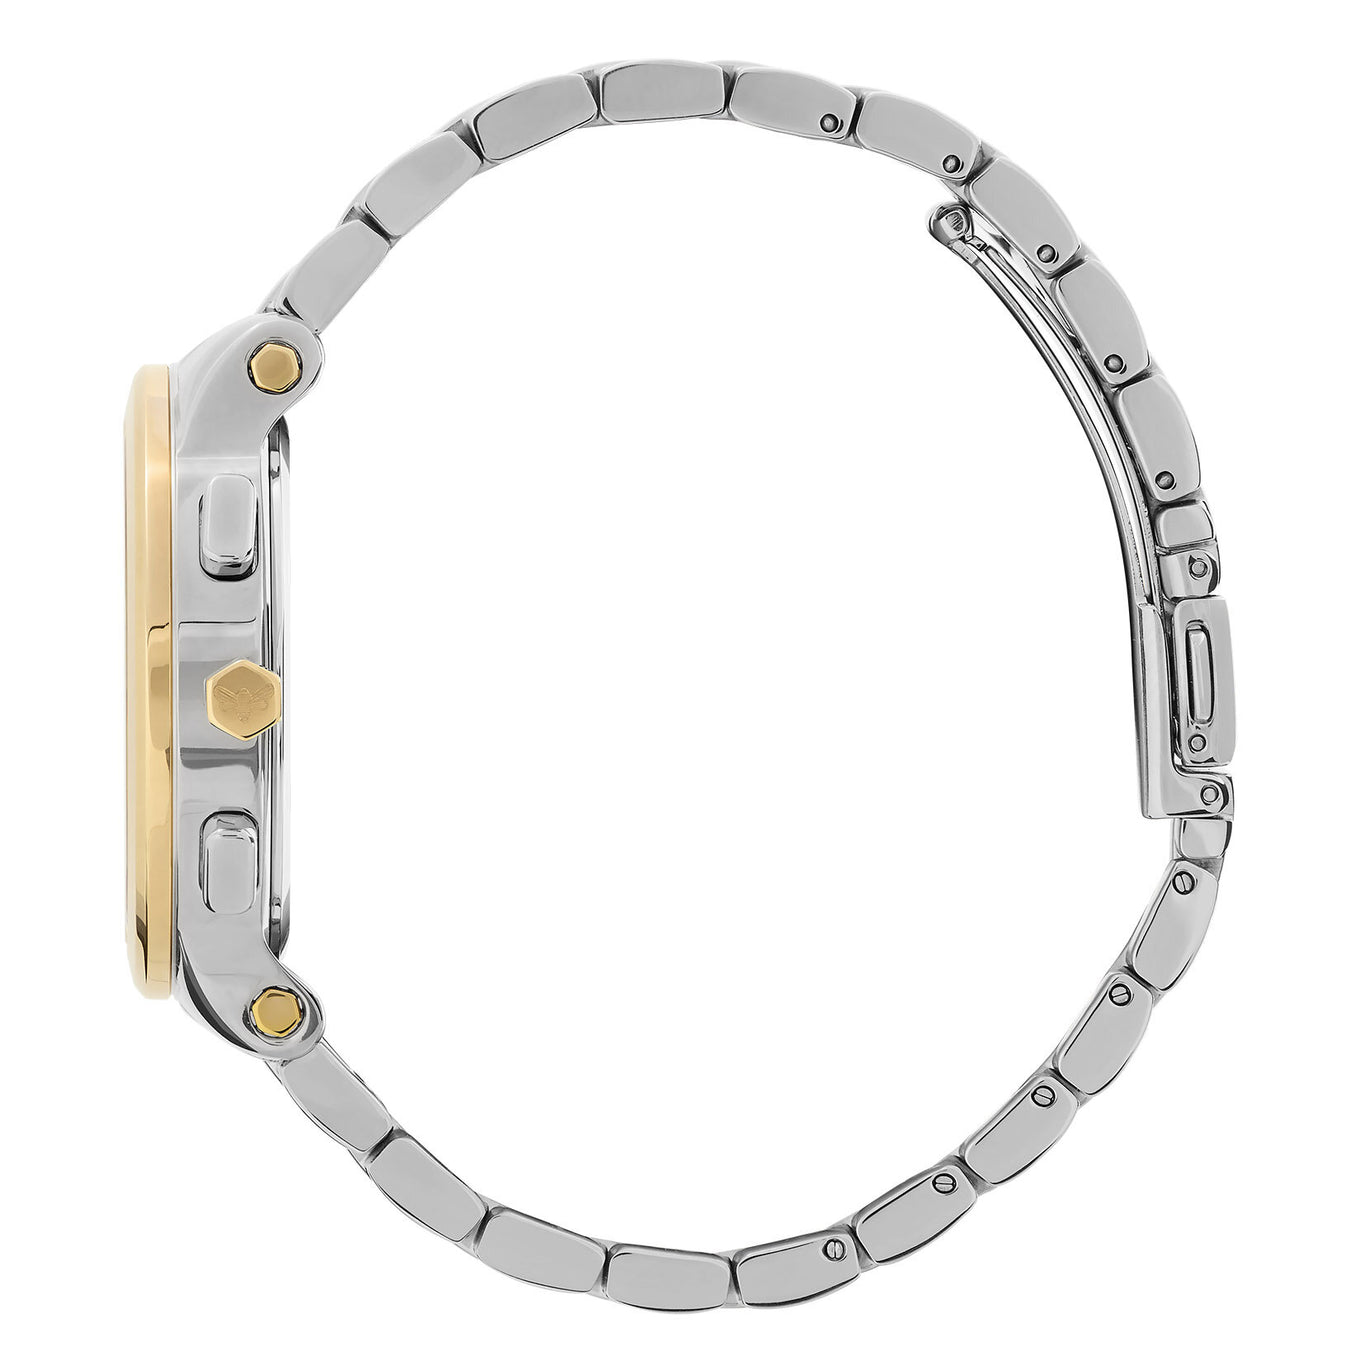 Olivia Burton Multi-Function Metallic White & Two Tone Bracelet Watch